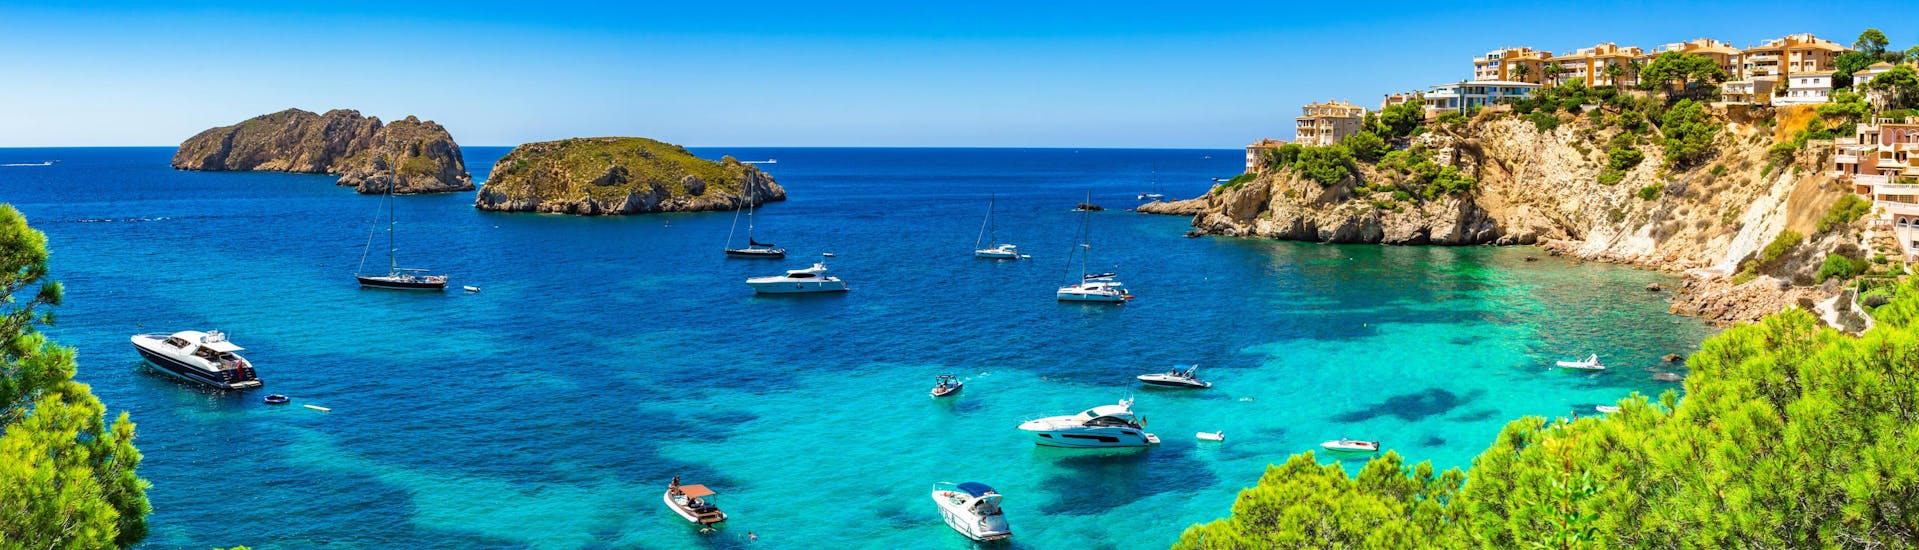 Vista de la costa de Santa Ponsa y las Islas Malgrats, que puede descubrir con un paseo en barco.